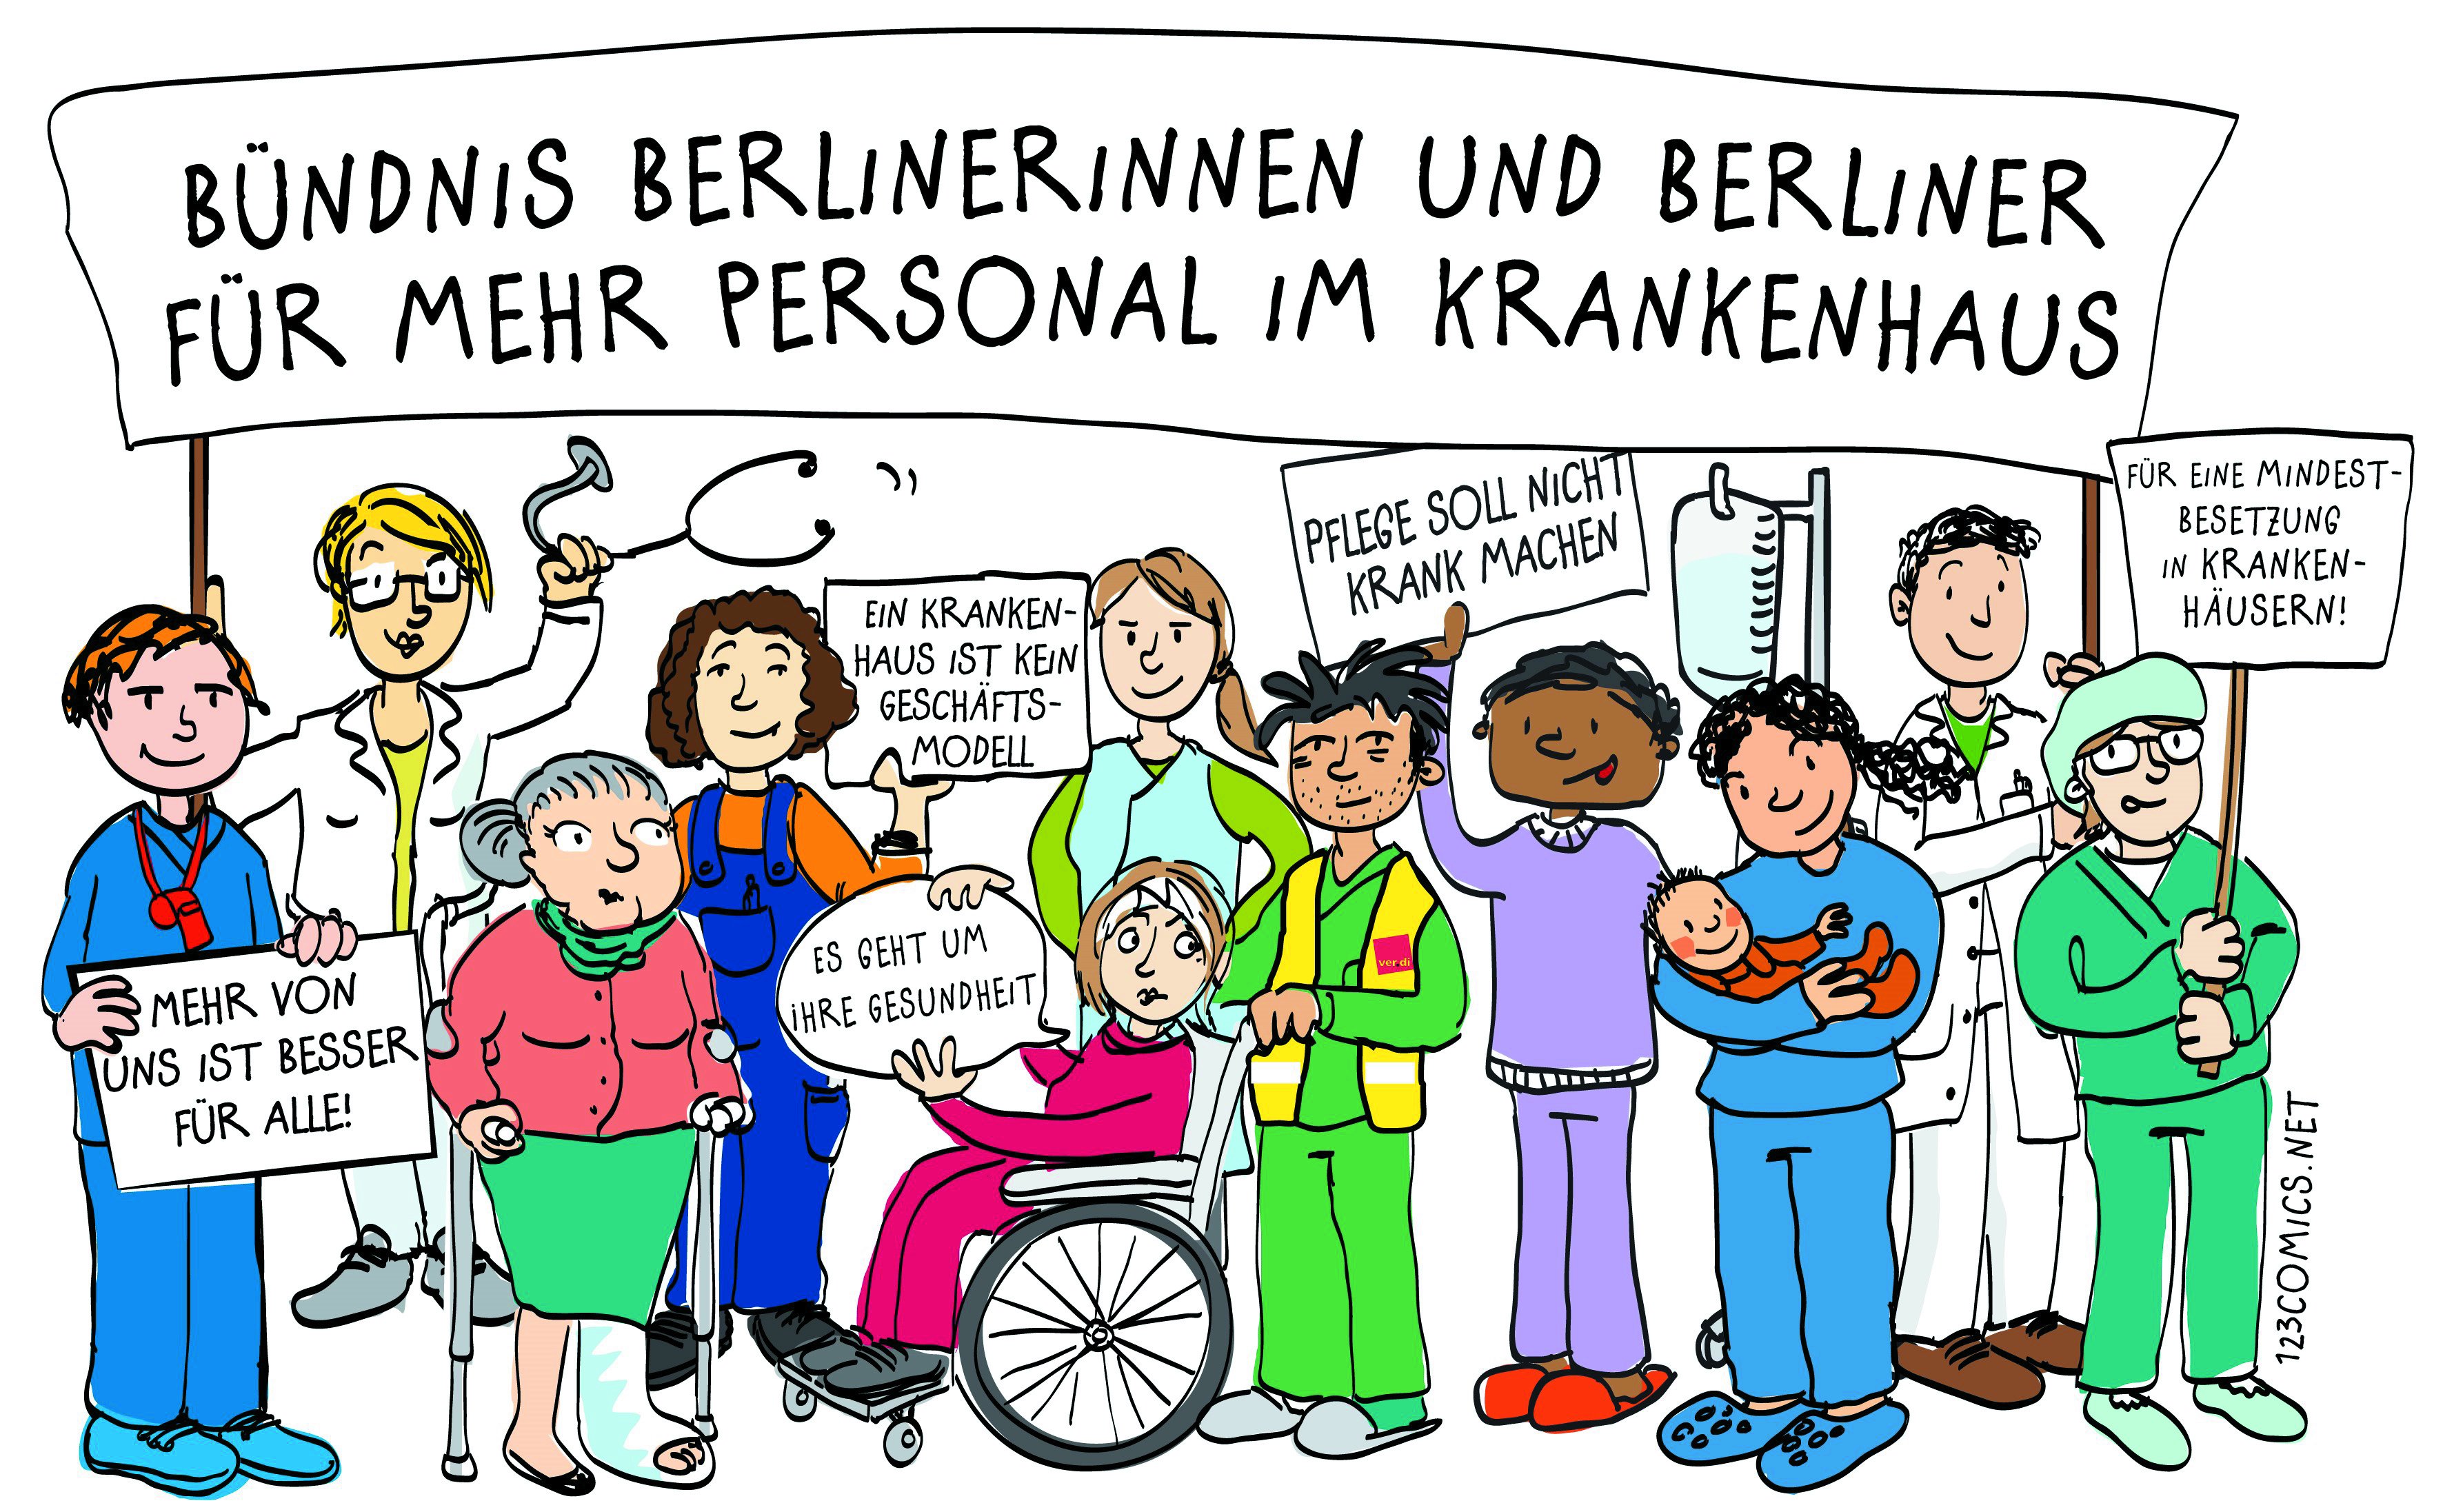 Foto: 123Comics. Lizenz: All rights reserved. Das Bündnis Berlinerinnen und Berliner für mehr Personal im Krankenhaus gründet sich im Juli 2013 um sich mit den Streikenden zu solidarisieren, aber auch, um eigene Interessen an einer guter pflegerischen Versorgung im Krankenhaus durchzusetzen.